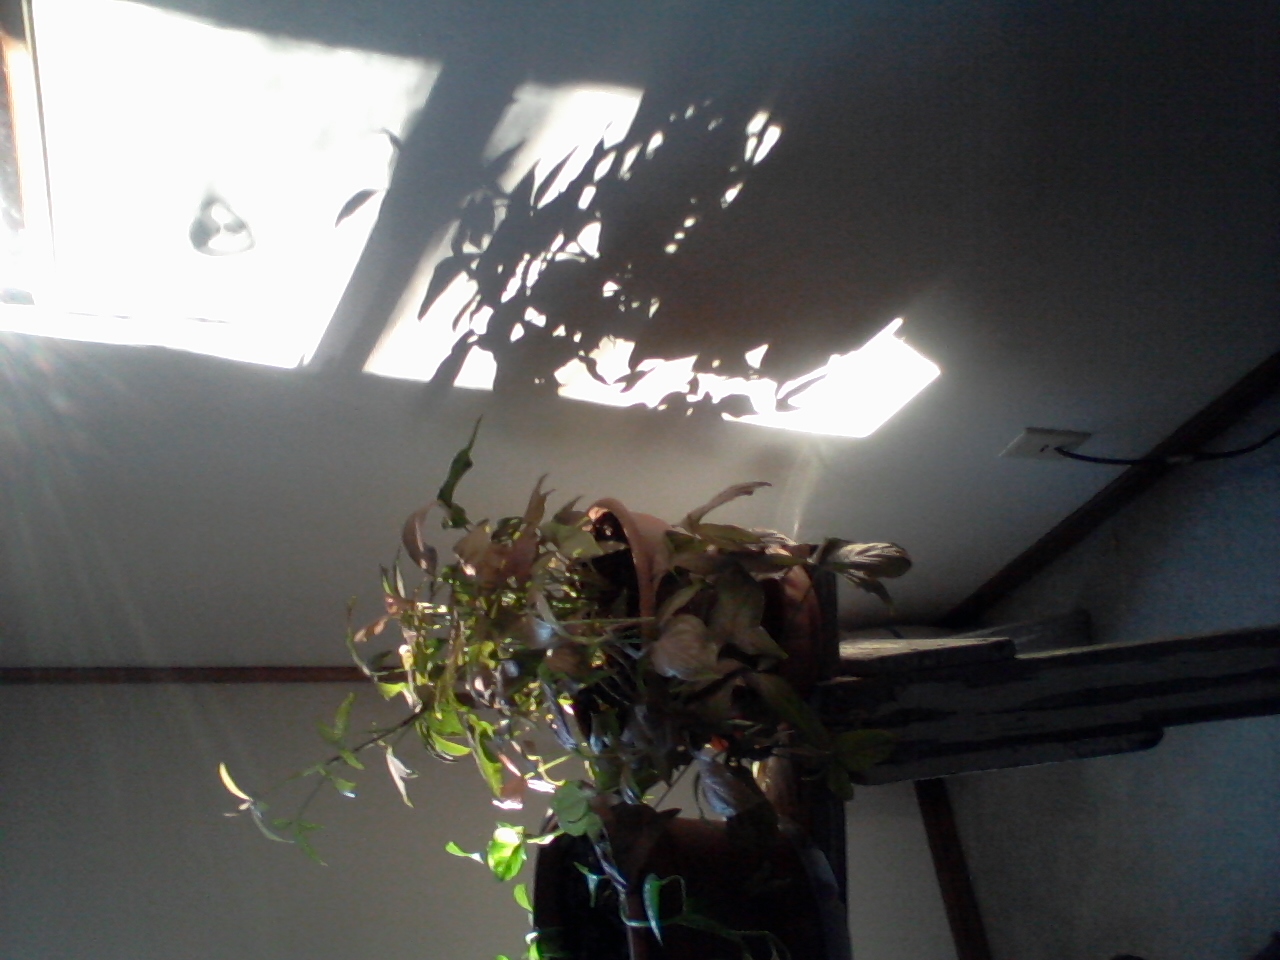 shadows of plant